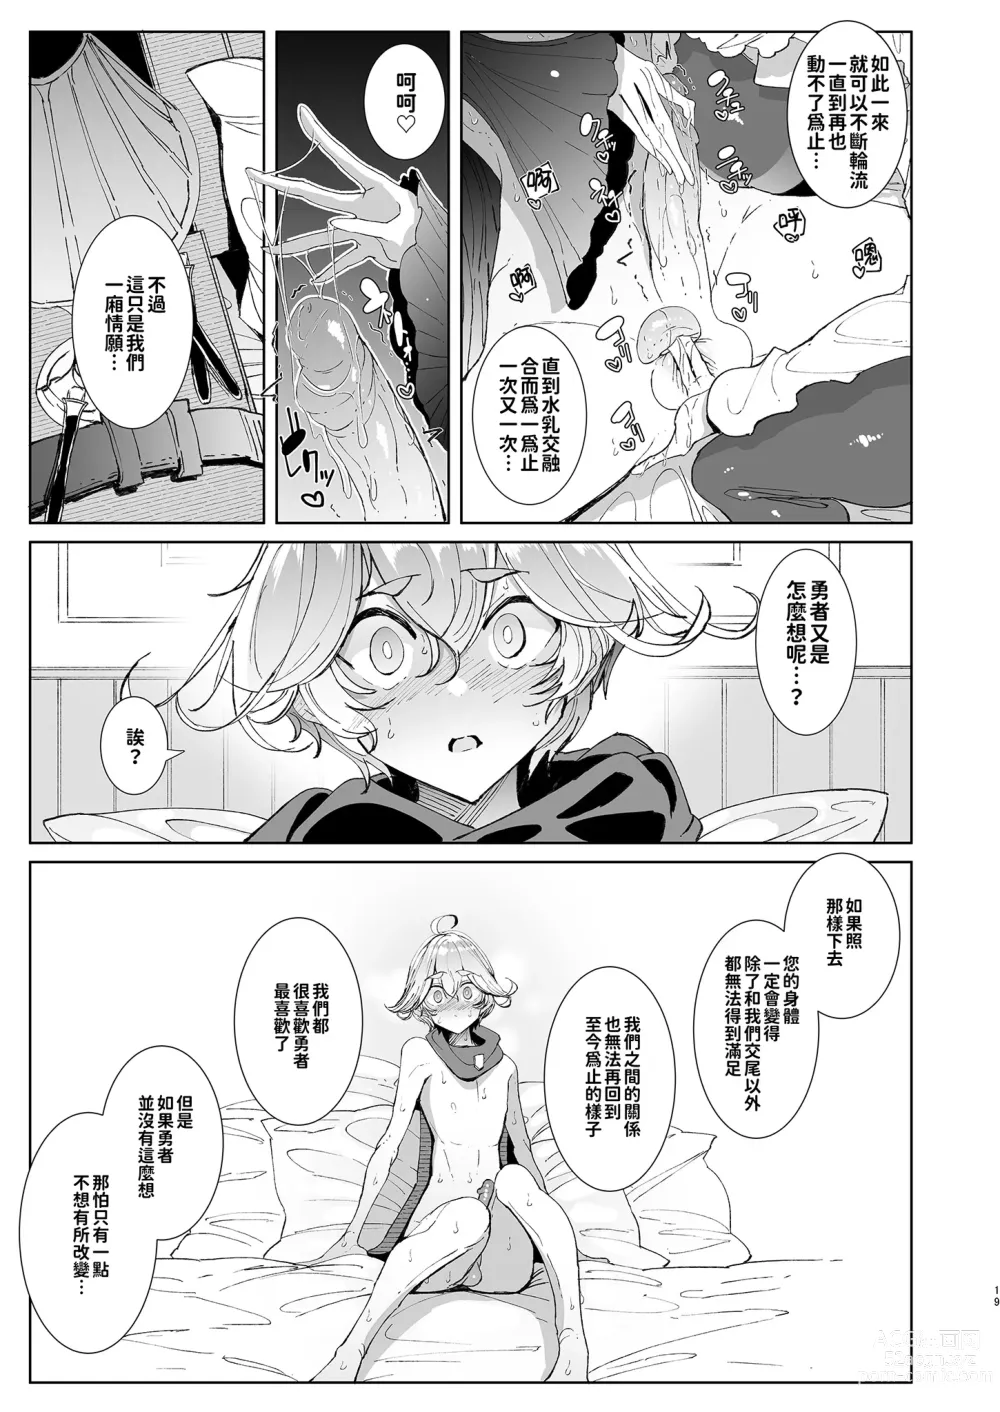 Page 19 of doujinshi 勇者和兩位扶她淫魔在討伐魔王後肯定要做那件事吧! (decensored)